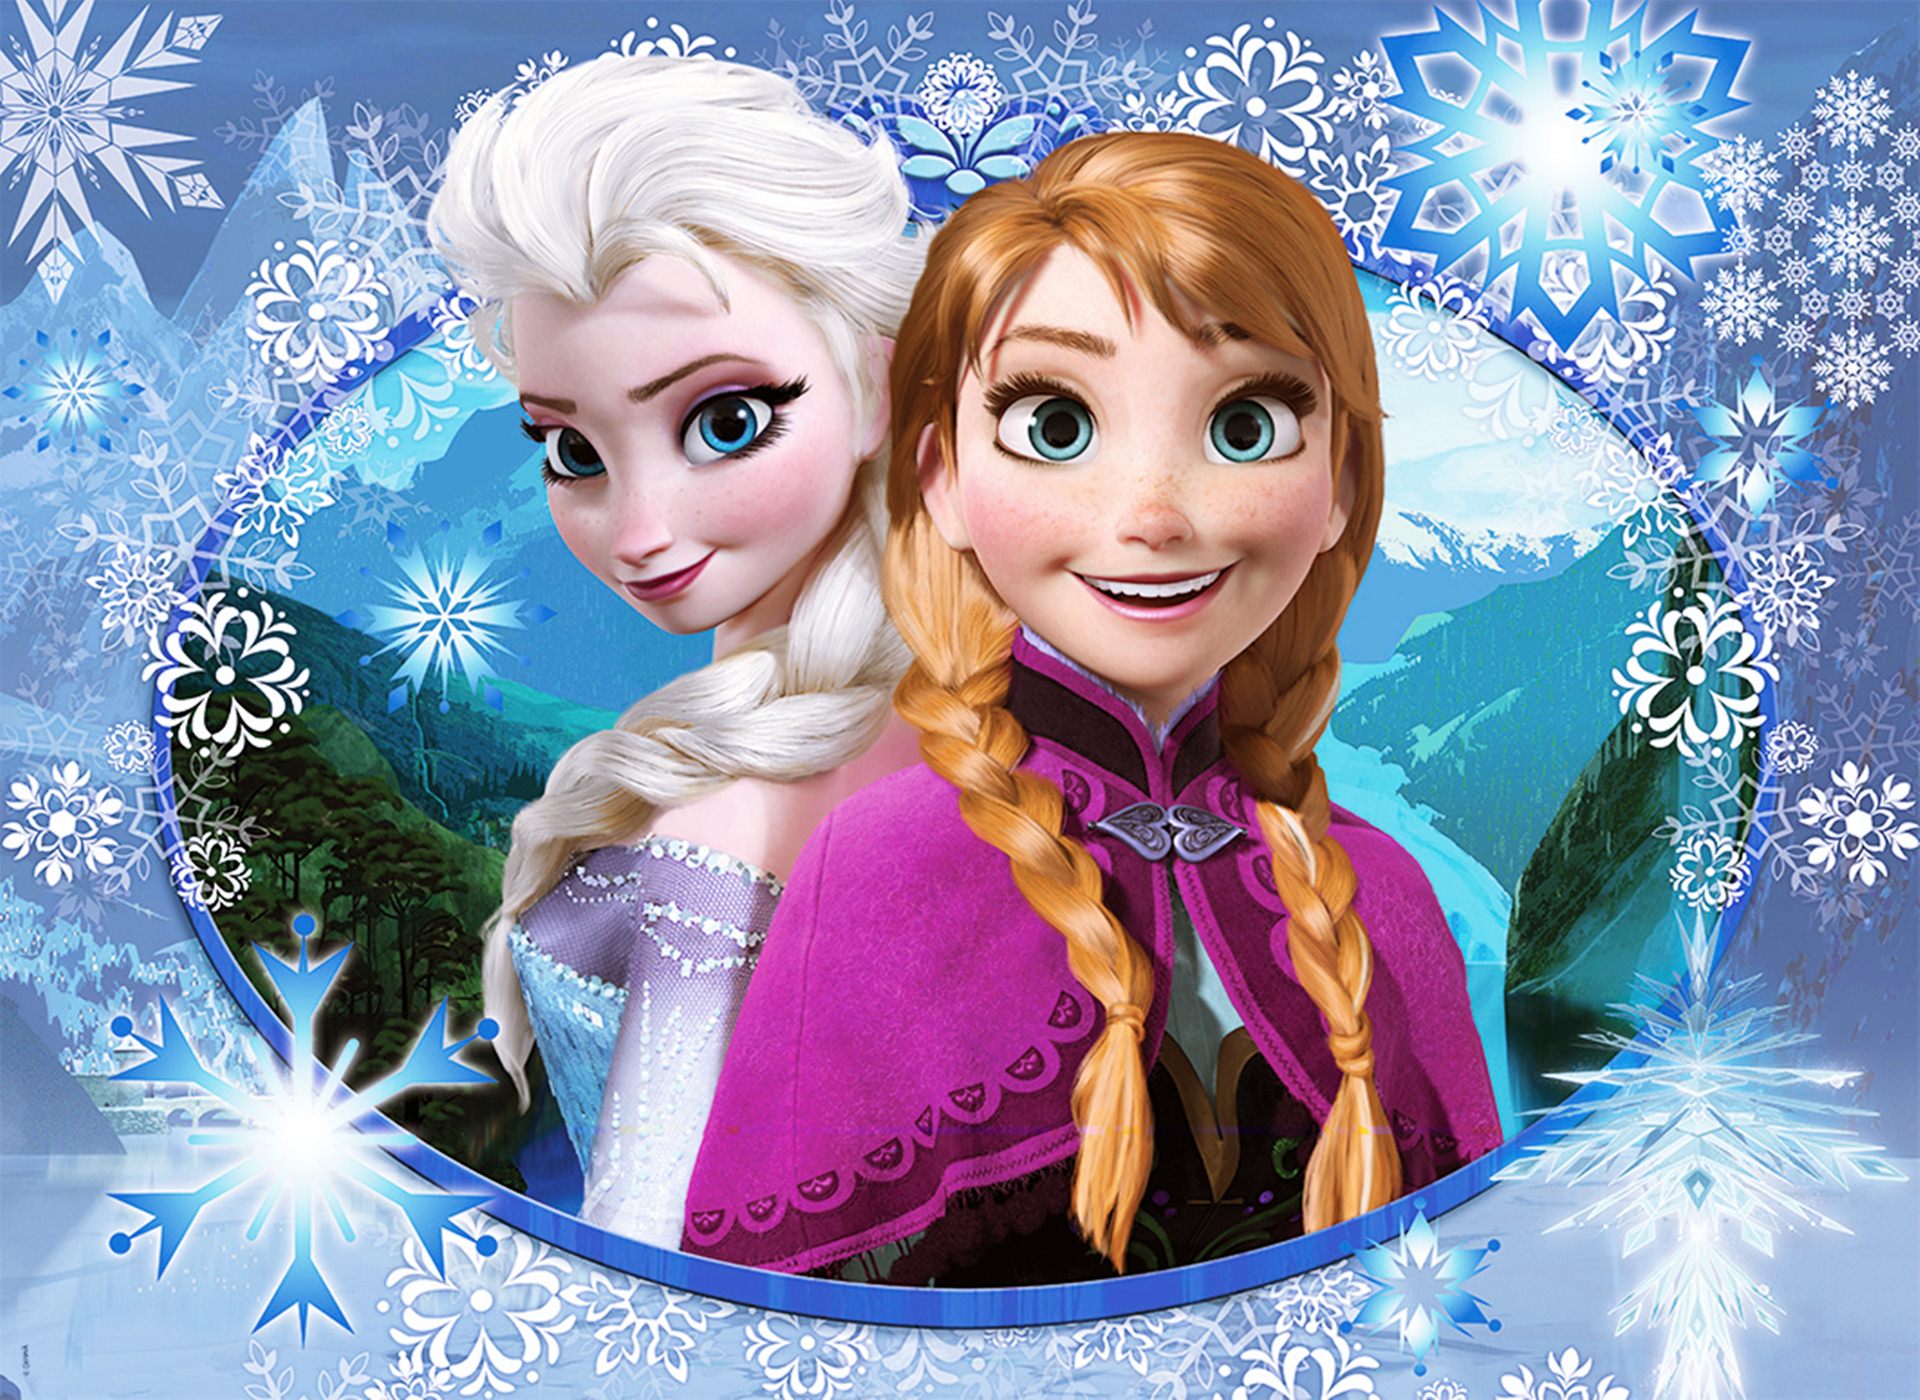  cat wallpapersjuego Queen Elsa and Princess Anna Frozen Wallpaperphp